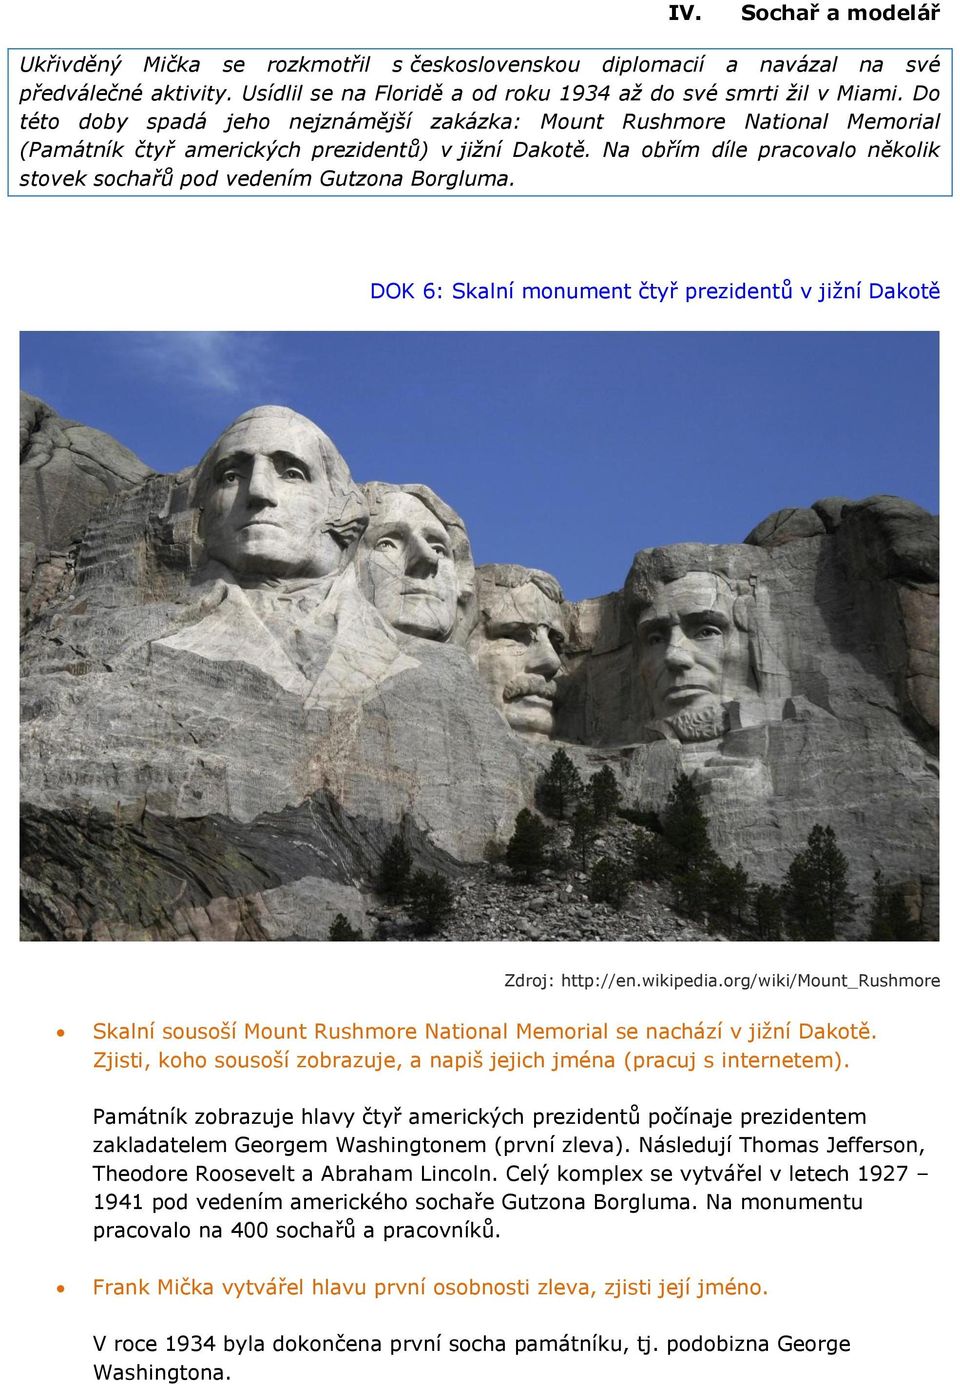 Na obřím díle pracovalo několik stovek sochařů pod vedením Gutzona Borgluma. DOK 6: Skalní monument čtyř prezidentů v jižní Dakotě Zdroj: http://en.wikipedia.